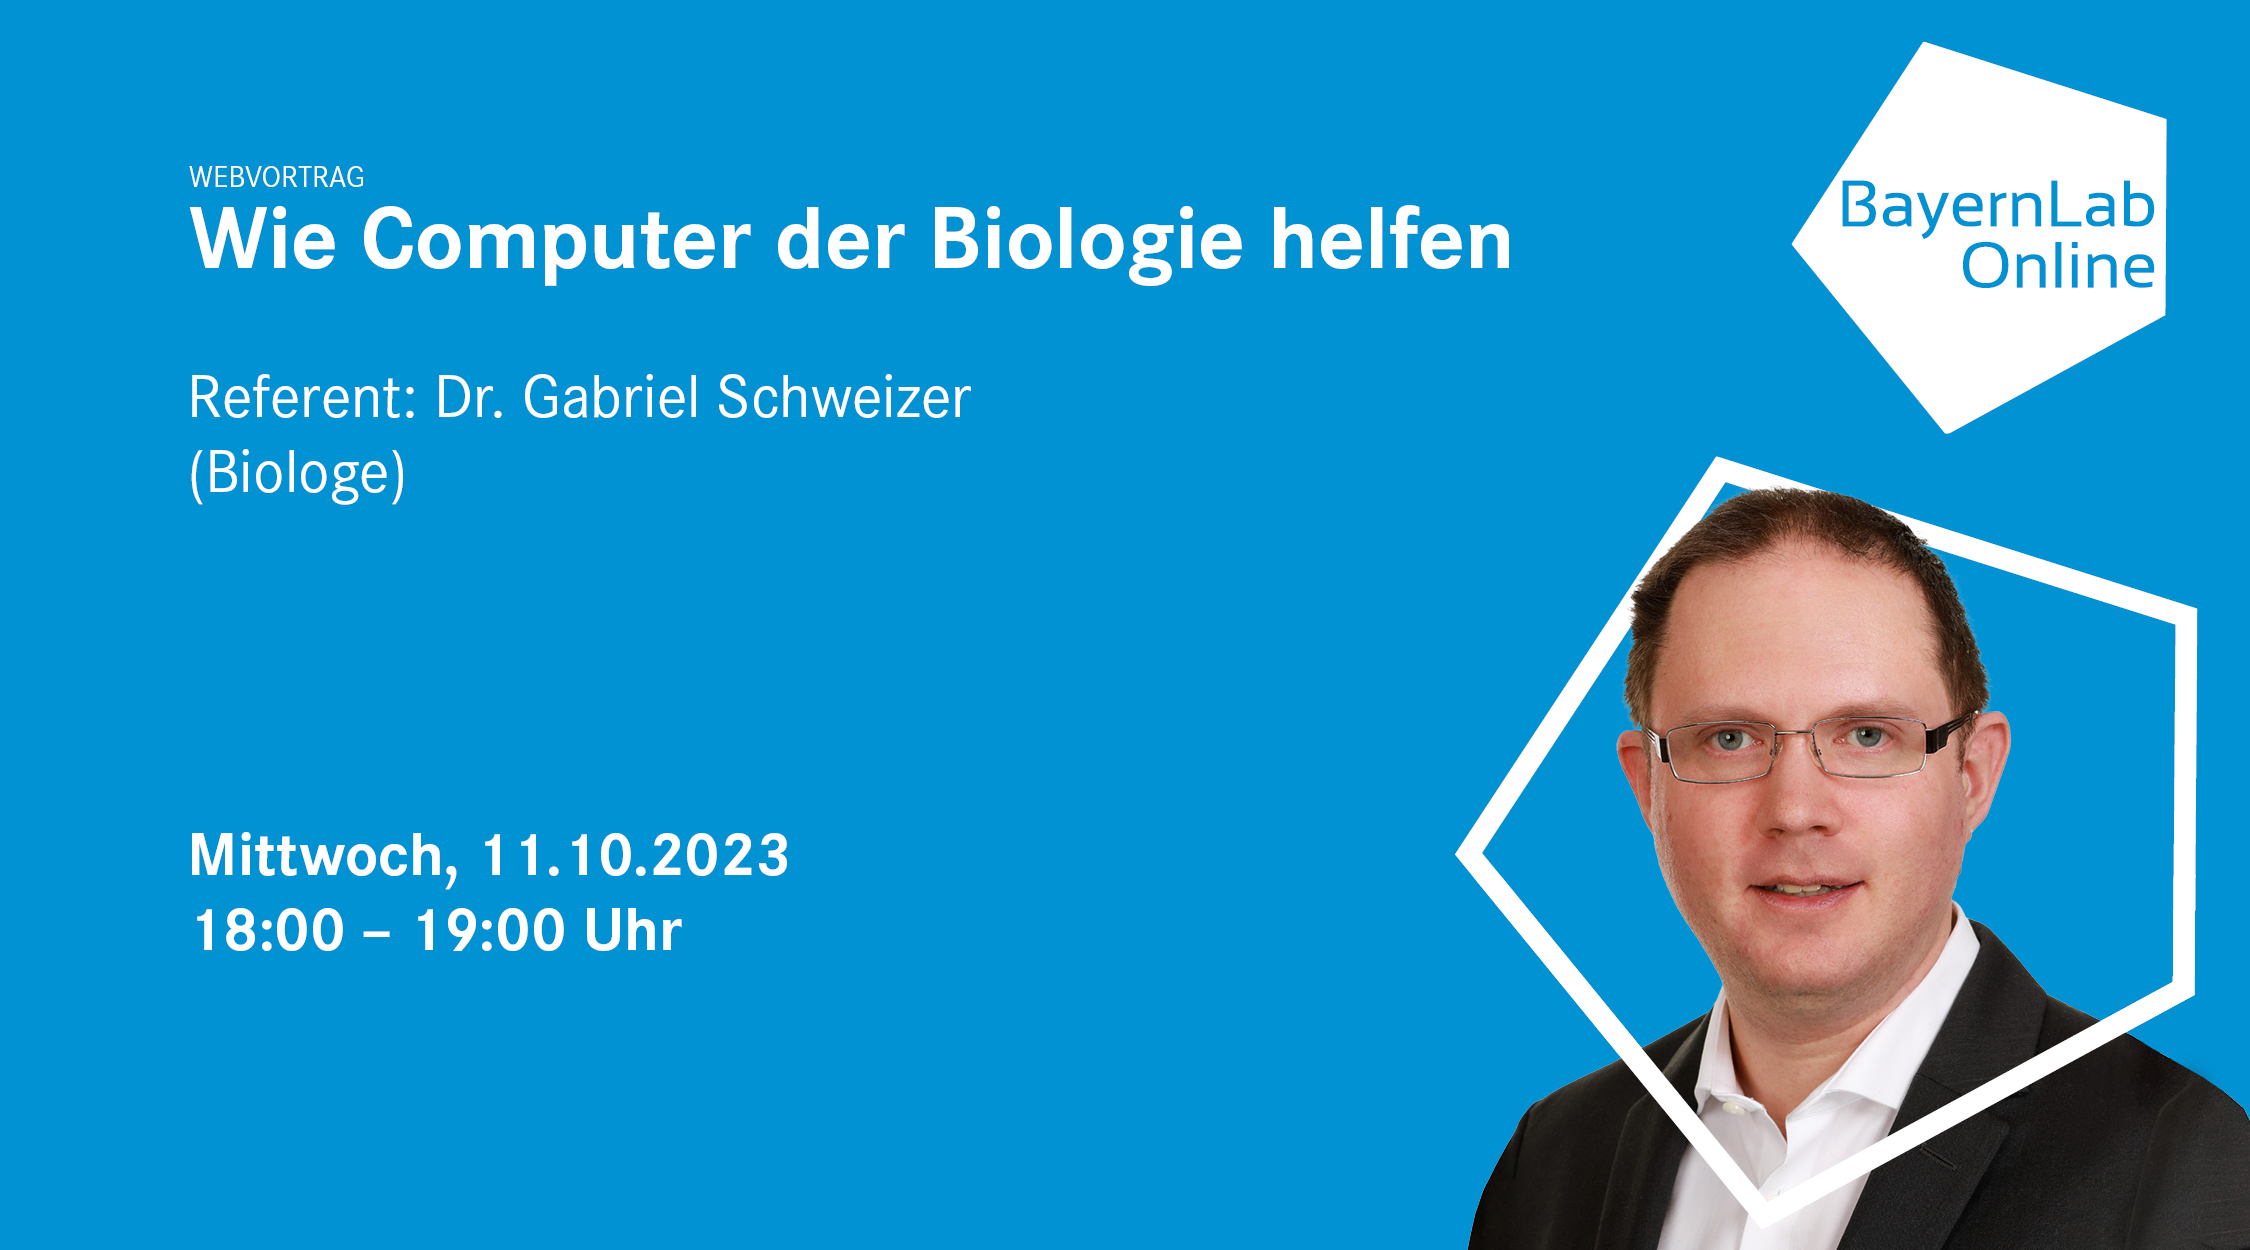 Veranstaltungsgrafik mit blauem Hintergrund und Foto mit Referent Dr. Gabriel Schweizer
Online Vortrag am 11. Oktober, 18.00 Uhr
Thema : Wie Computer in der Biologie helfen